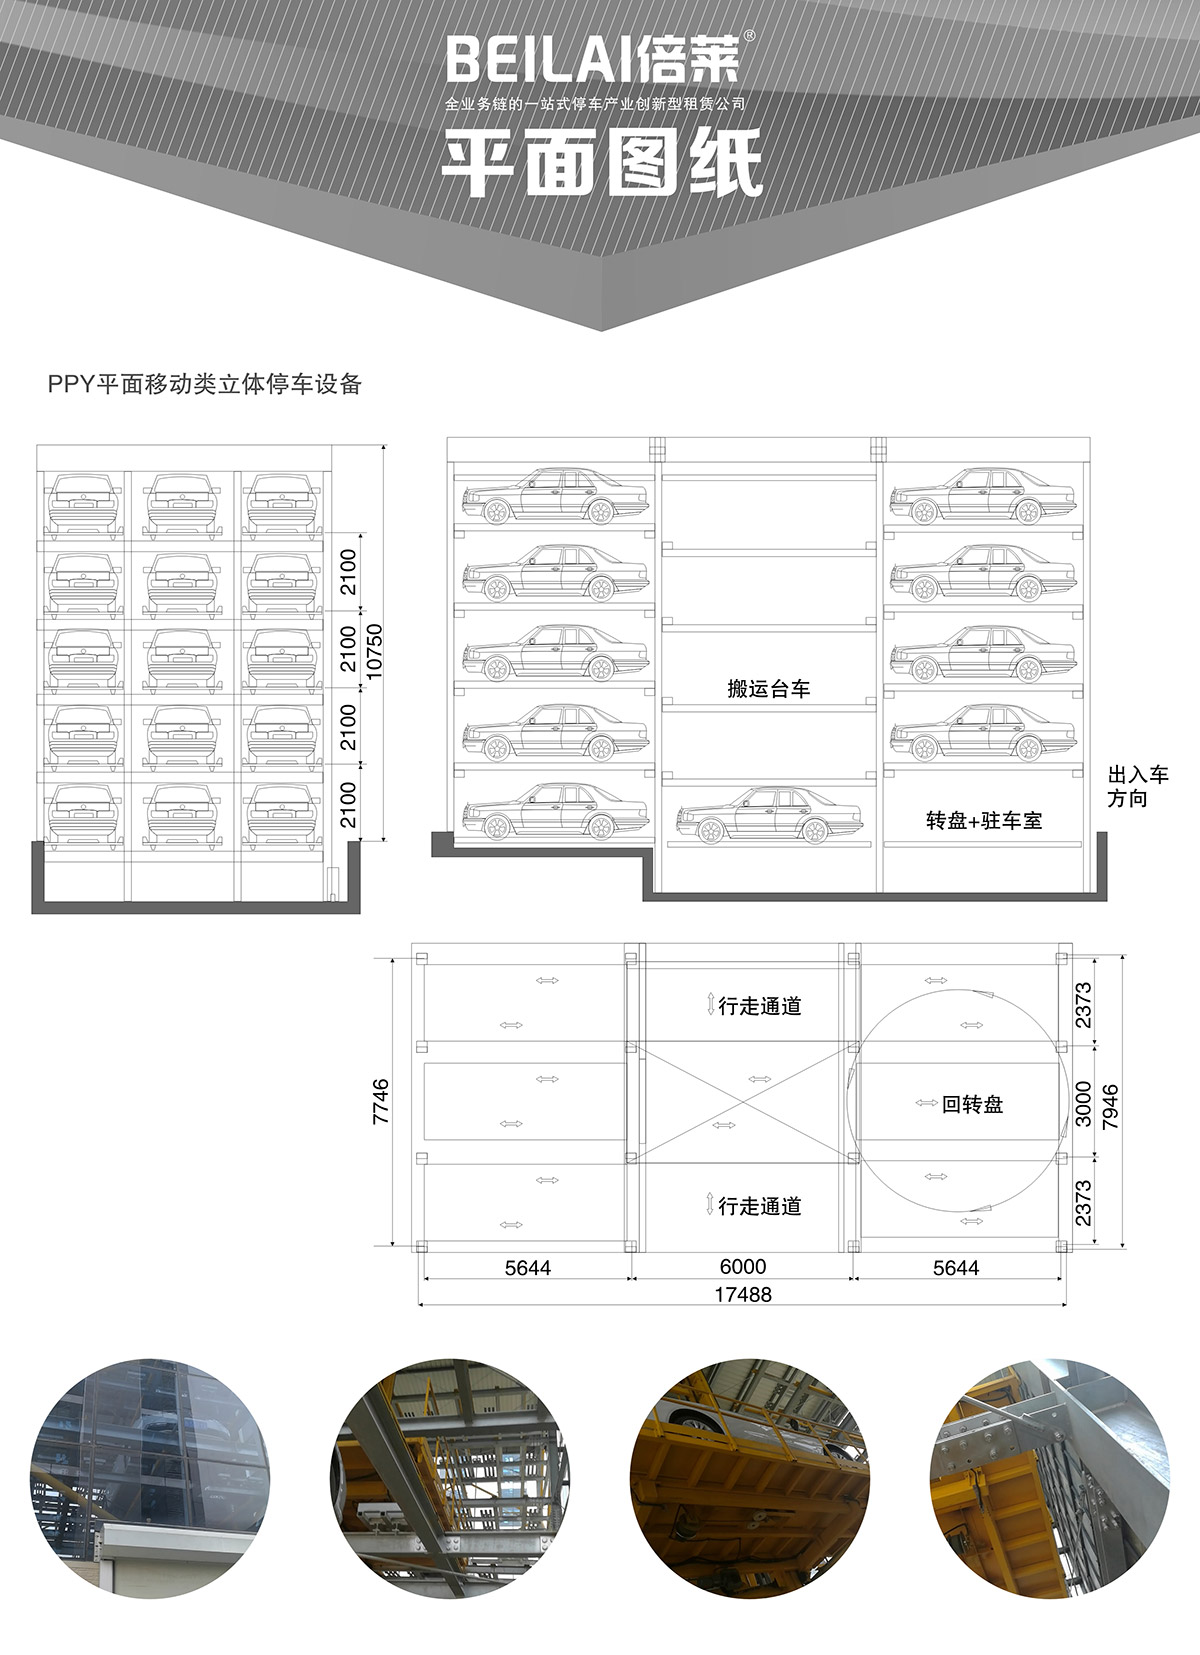 重庆平面移动立体停车设备平面图纸.jpg